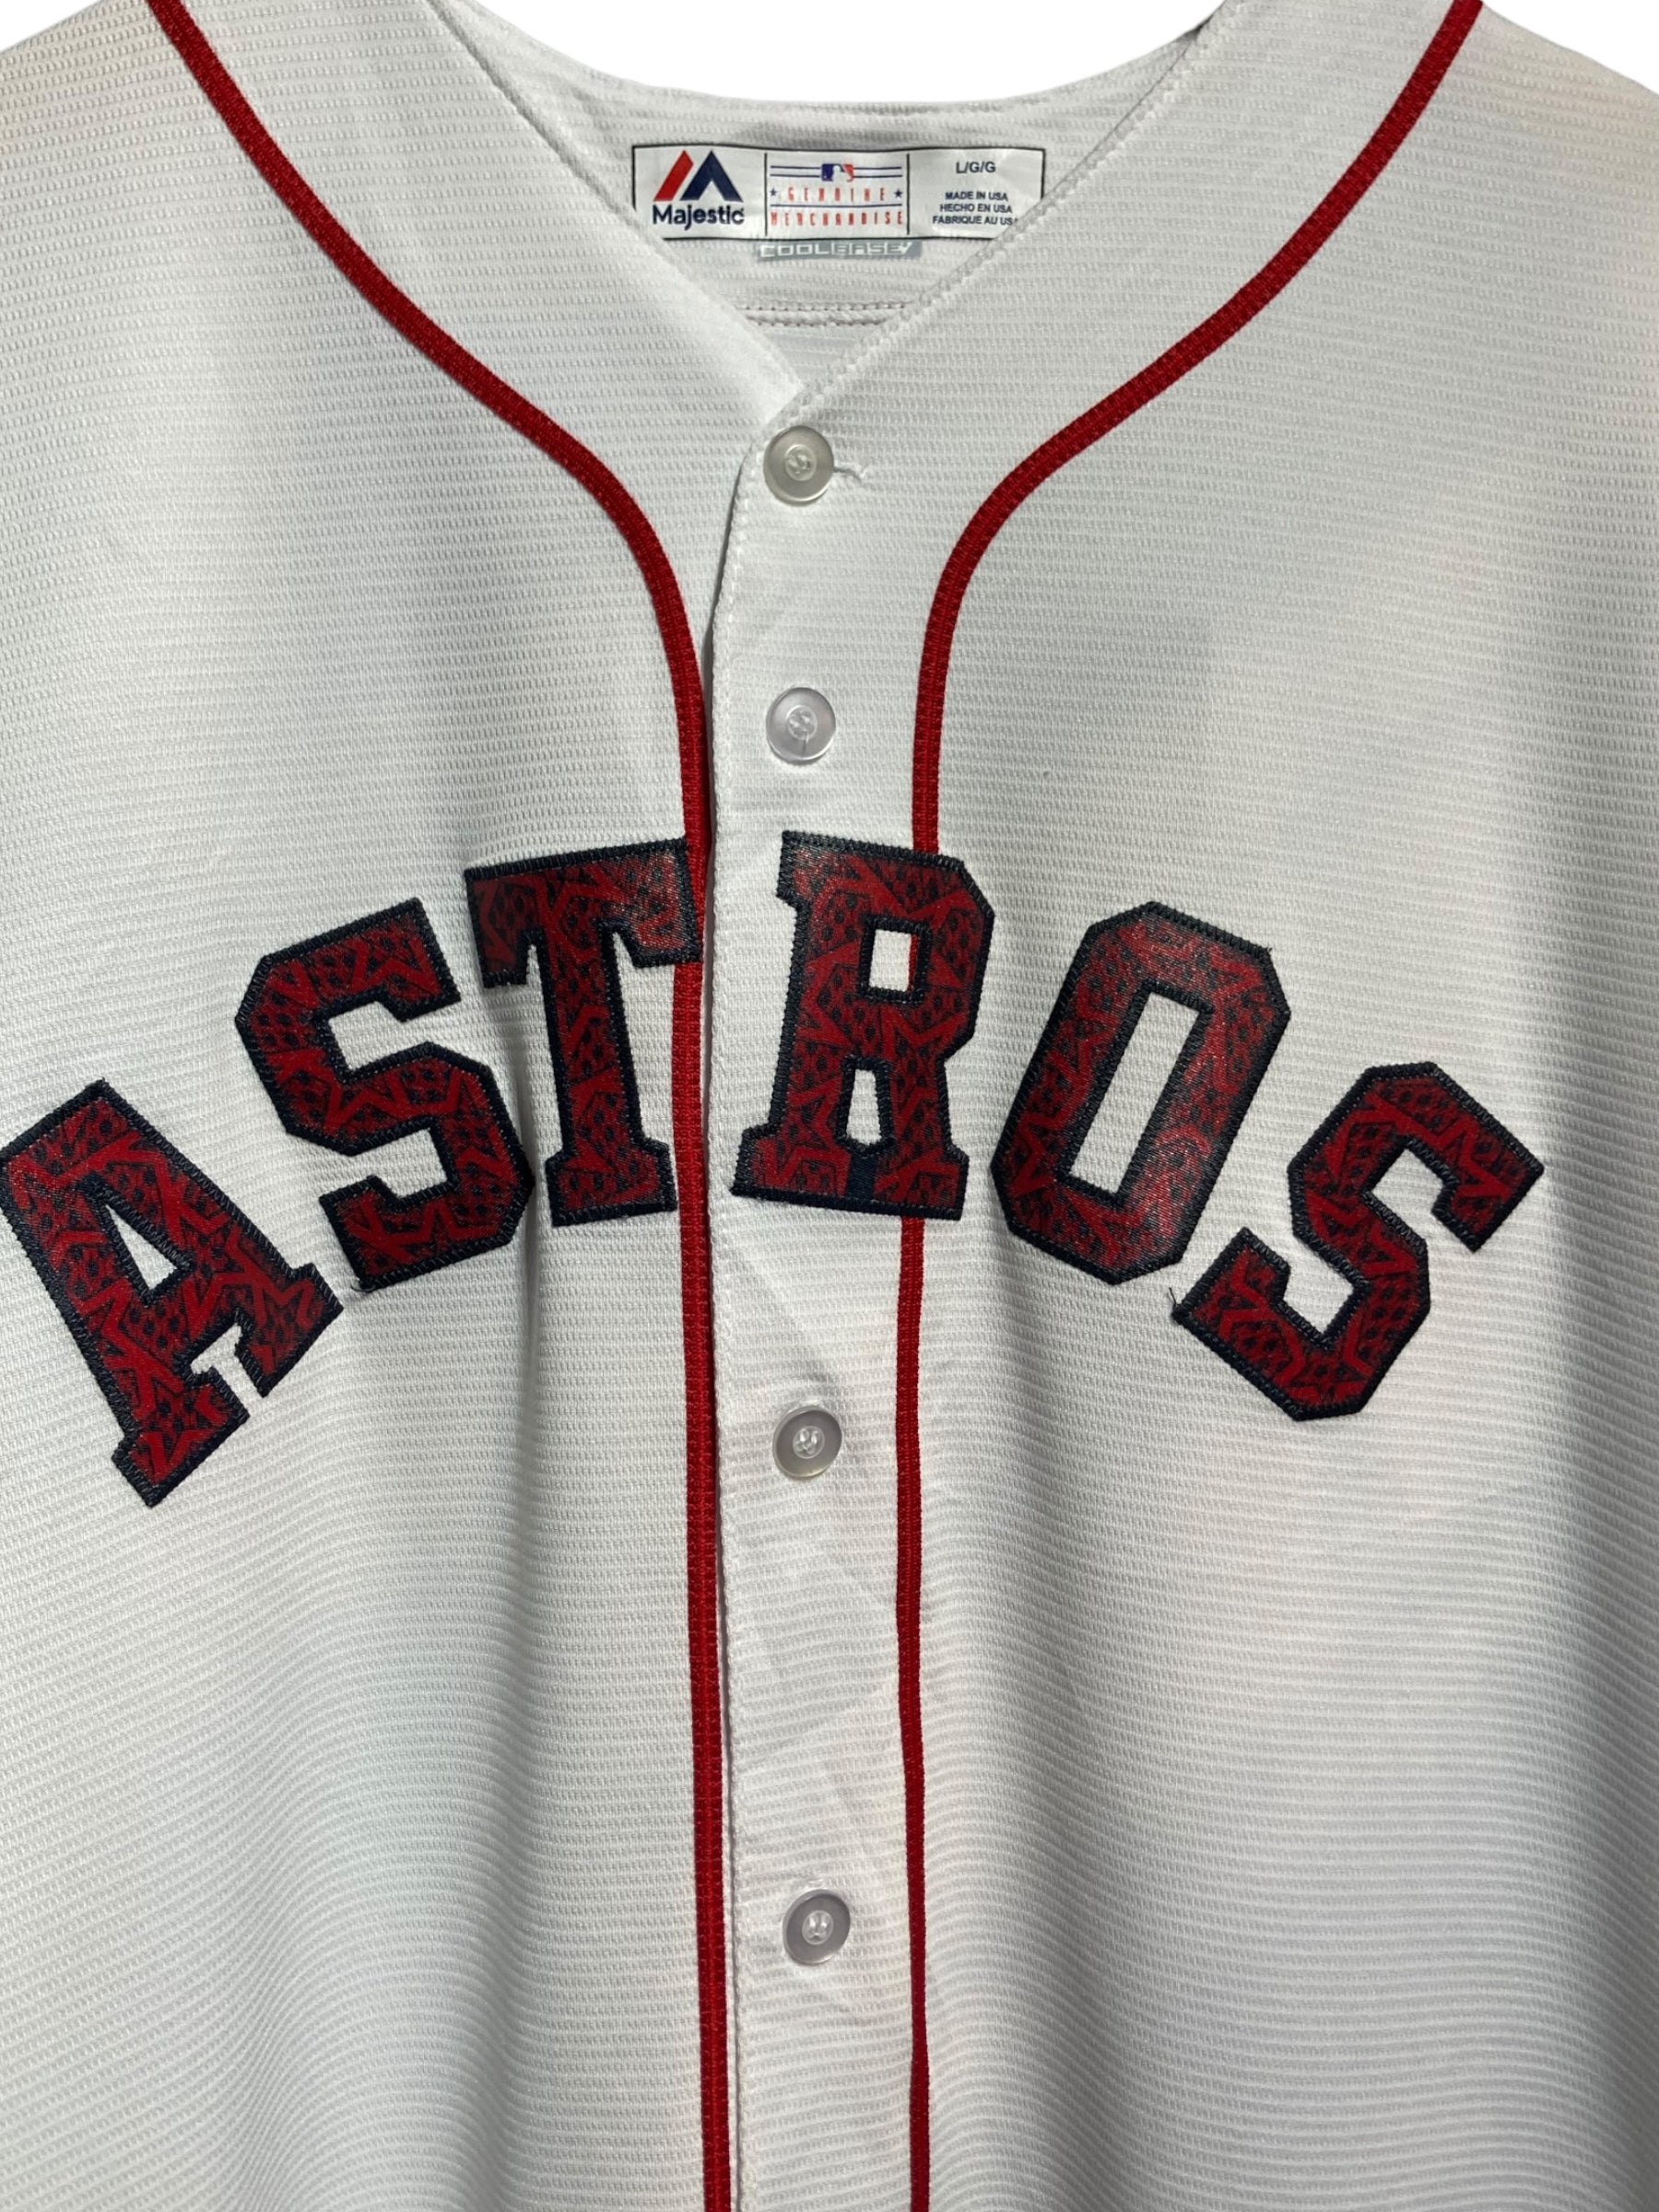 Astros アストロズ Majestic マジェスティック BASEBALL ベースボール 